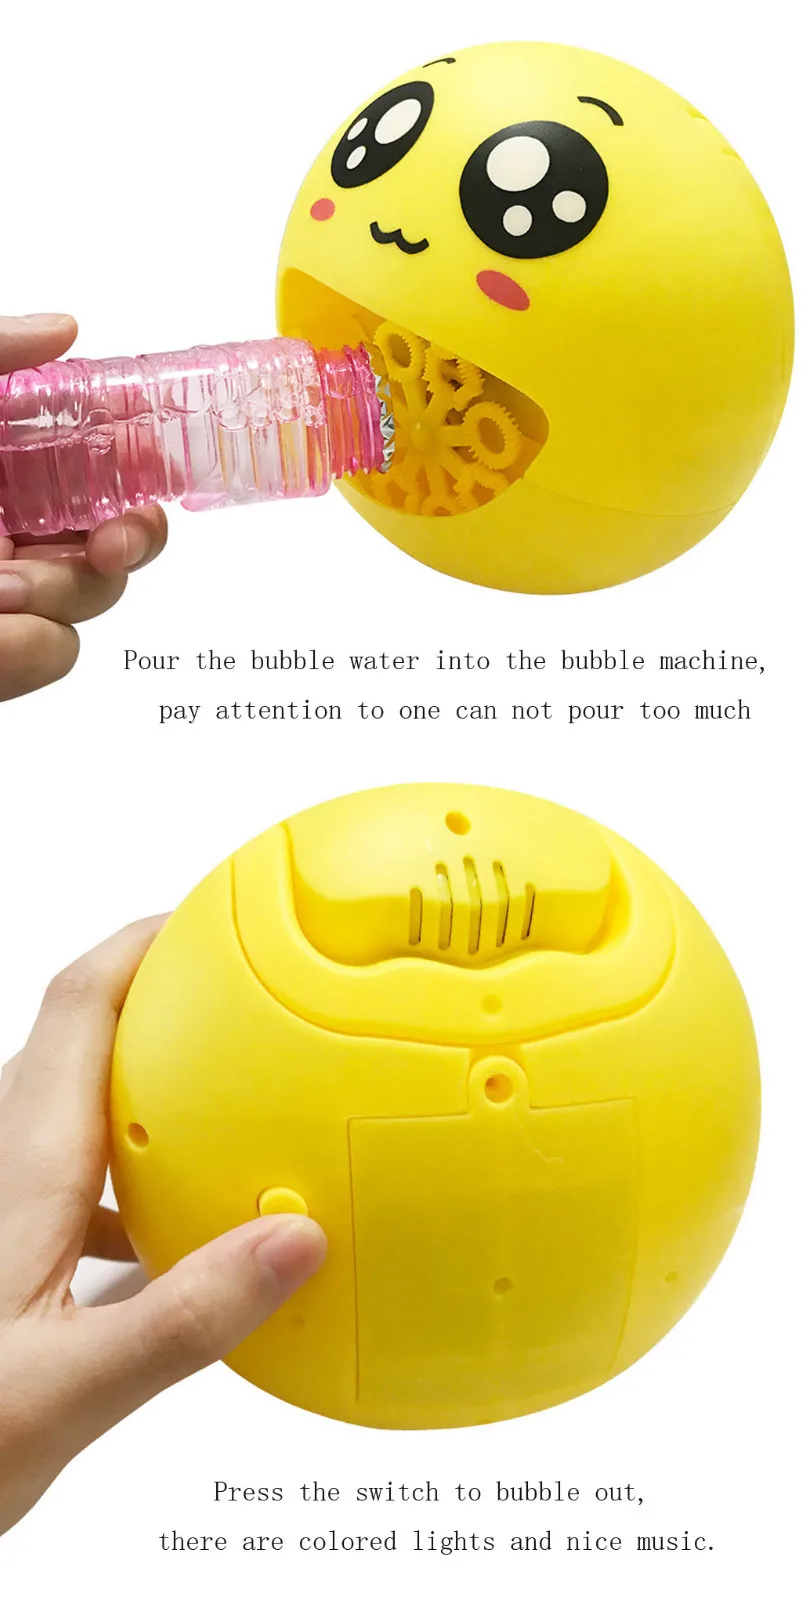 Ванная комната мультфильм автоматическая машина для пузырей Лето Открытый пузырчатая Воздуходувка с музыкой свет Ванна игрушка детский подарок дропшиппинг